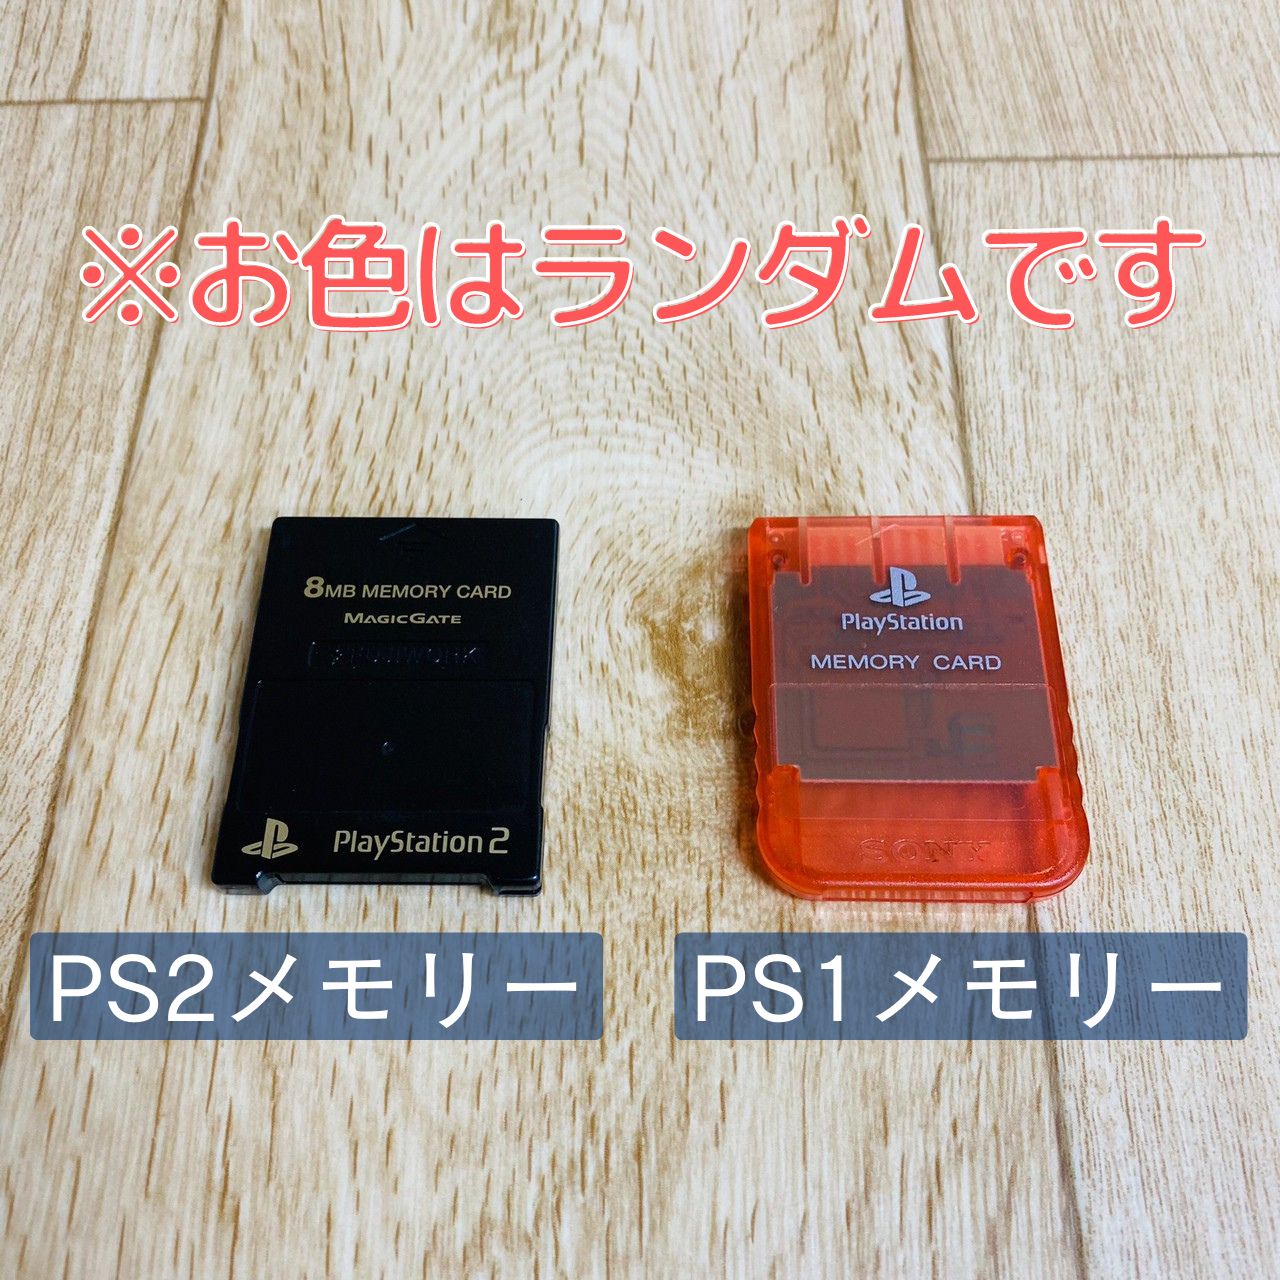 ゲームソフト/ゲーム機本体PS2 薄型本体 ケーブル、メモリカード付属 